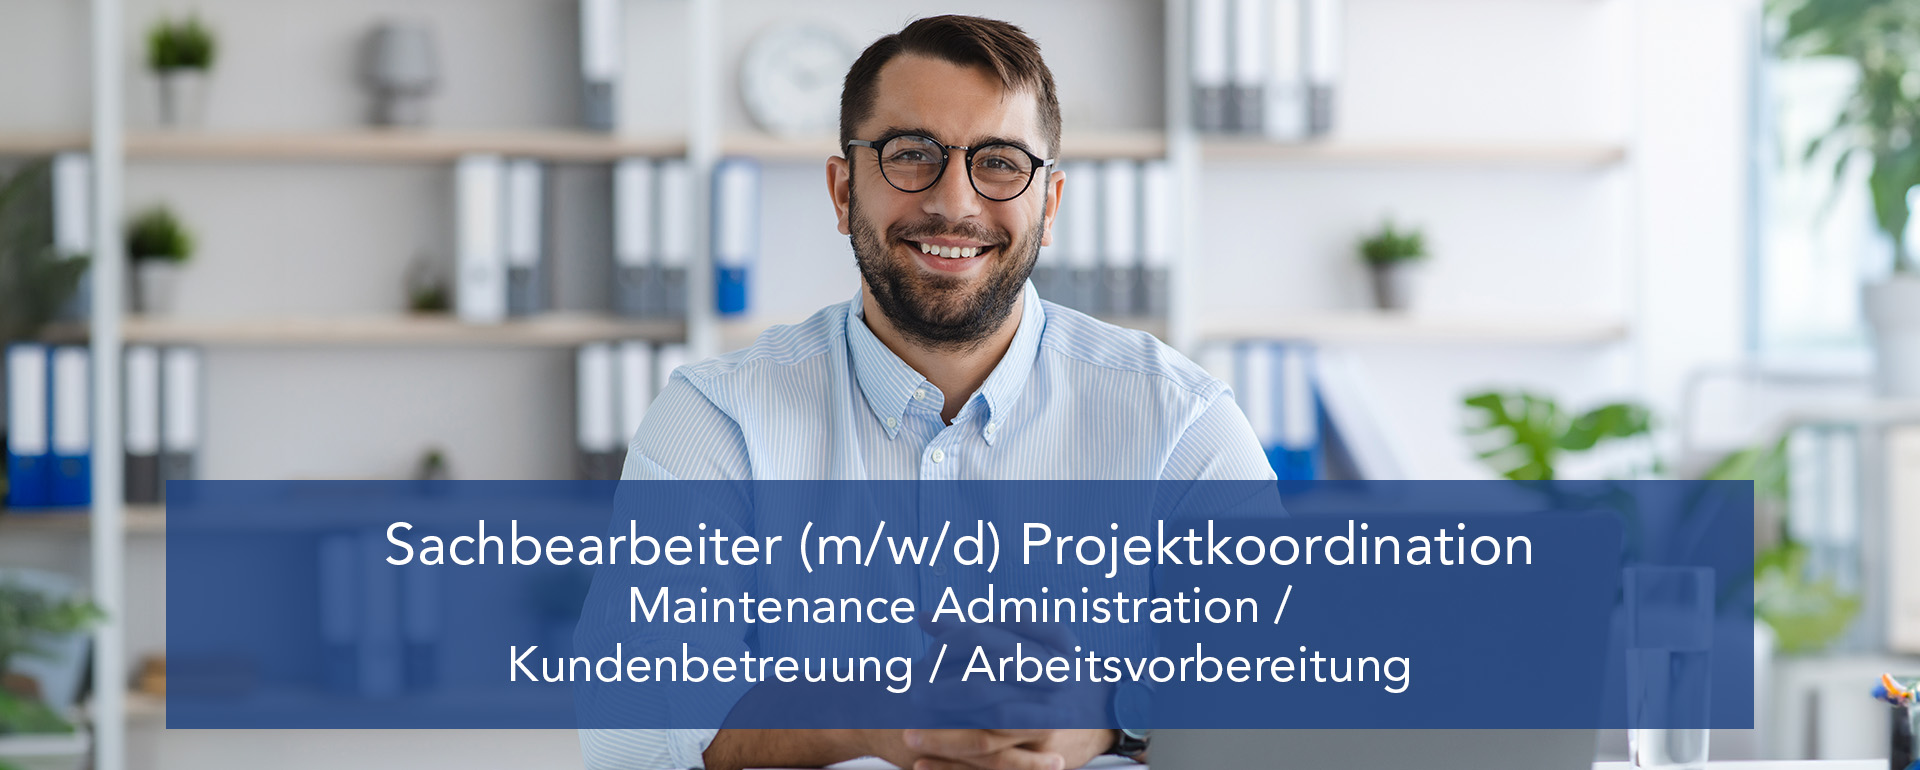 Sachbearbeiter (m/w/d) Projektkoordination - Maintenance Administration / Kundenbetreuung / Arbeitsvorbereitung